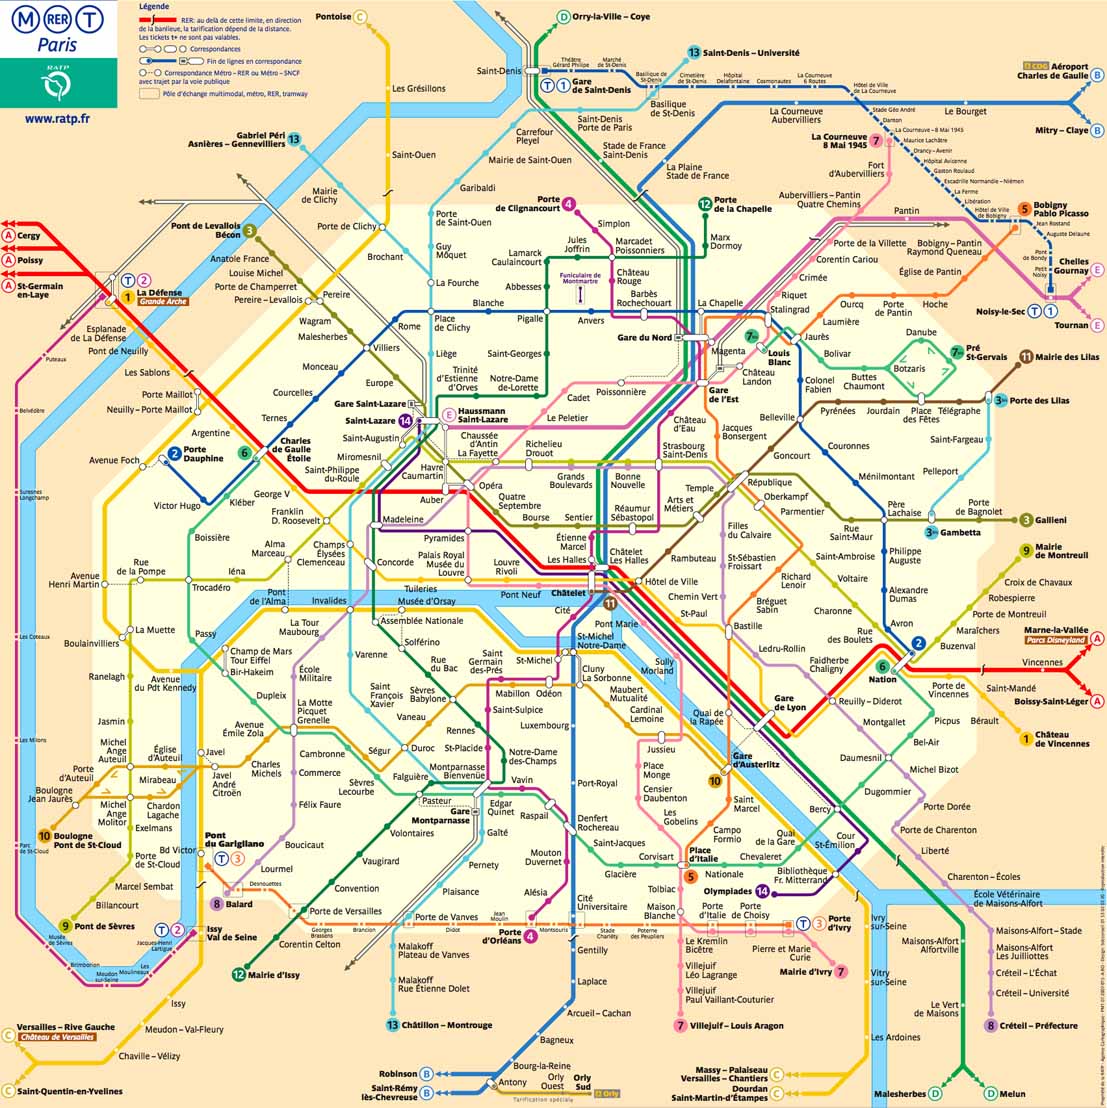 PARIS: Telecharger le Plan du Metro